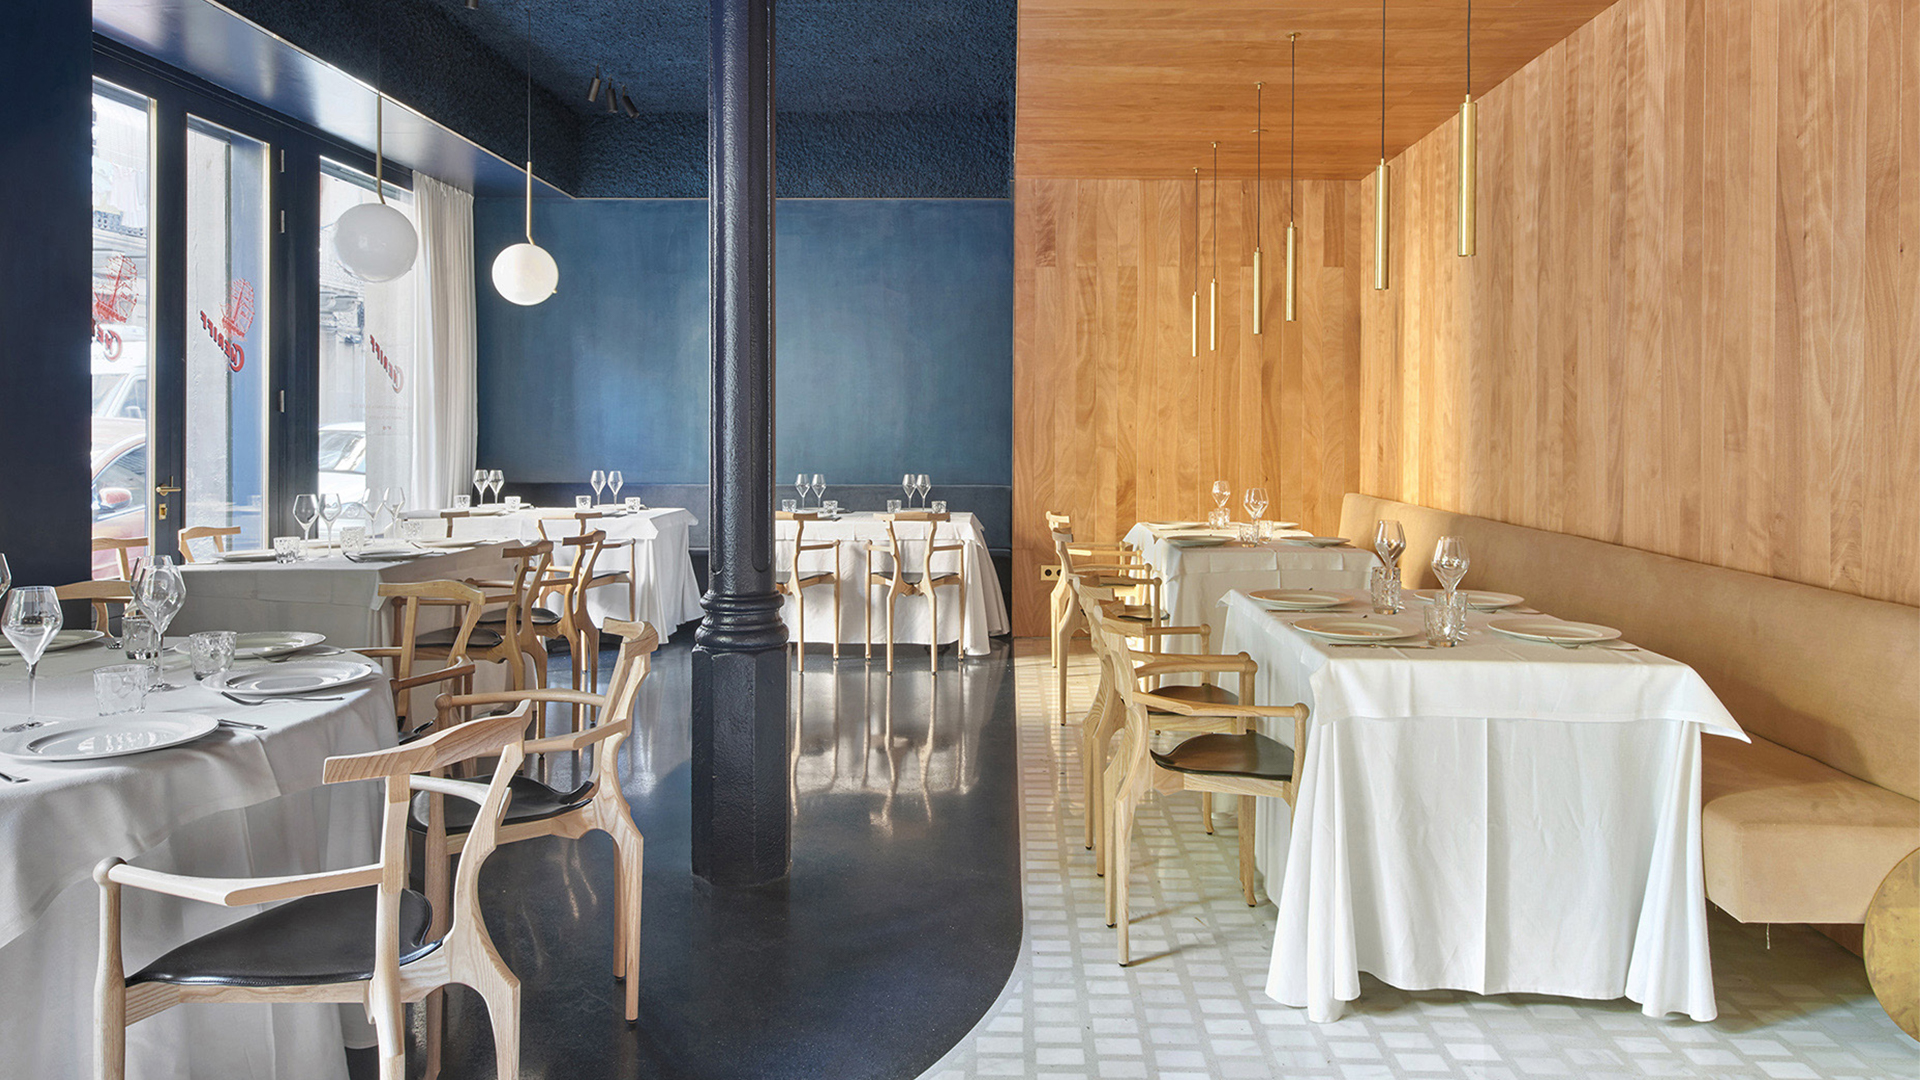 Cheriff restaurant by Mesura Architects